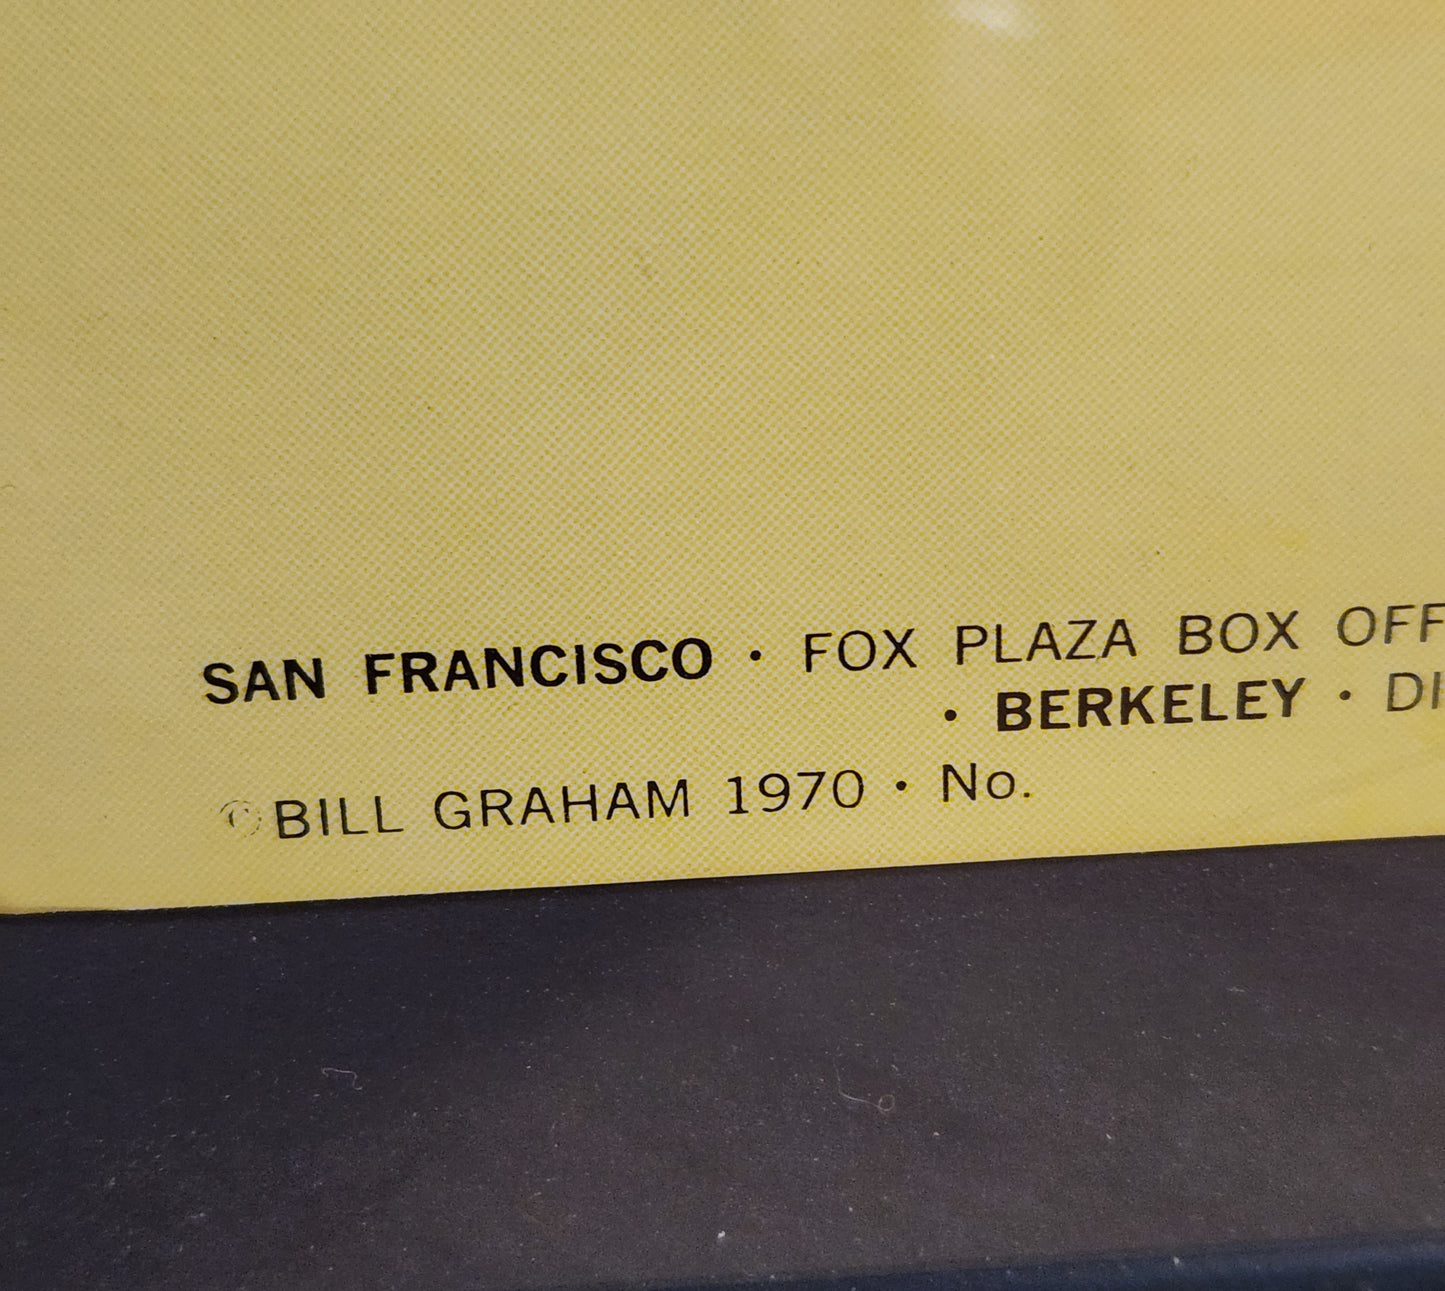 1970 Bill Graham BG-251 Van Morrison & Captain Beefheart Concert Poster